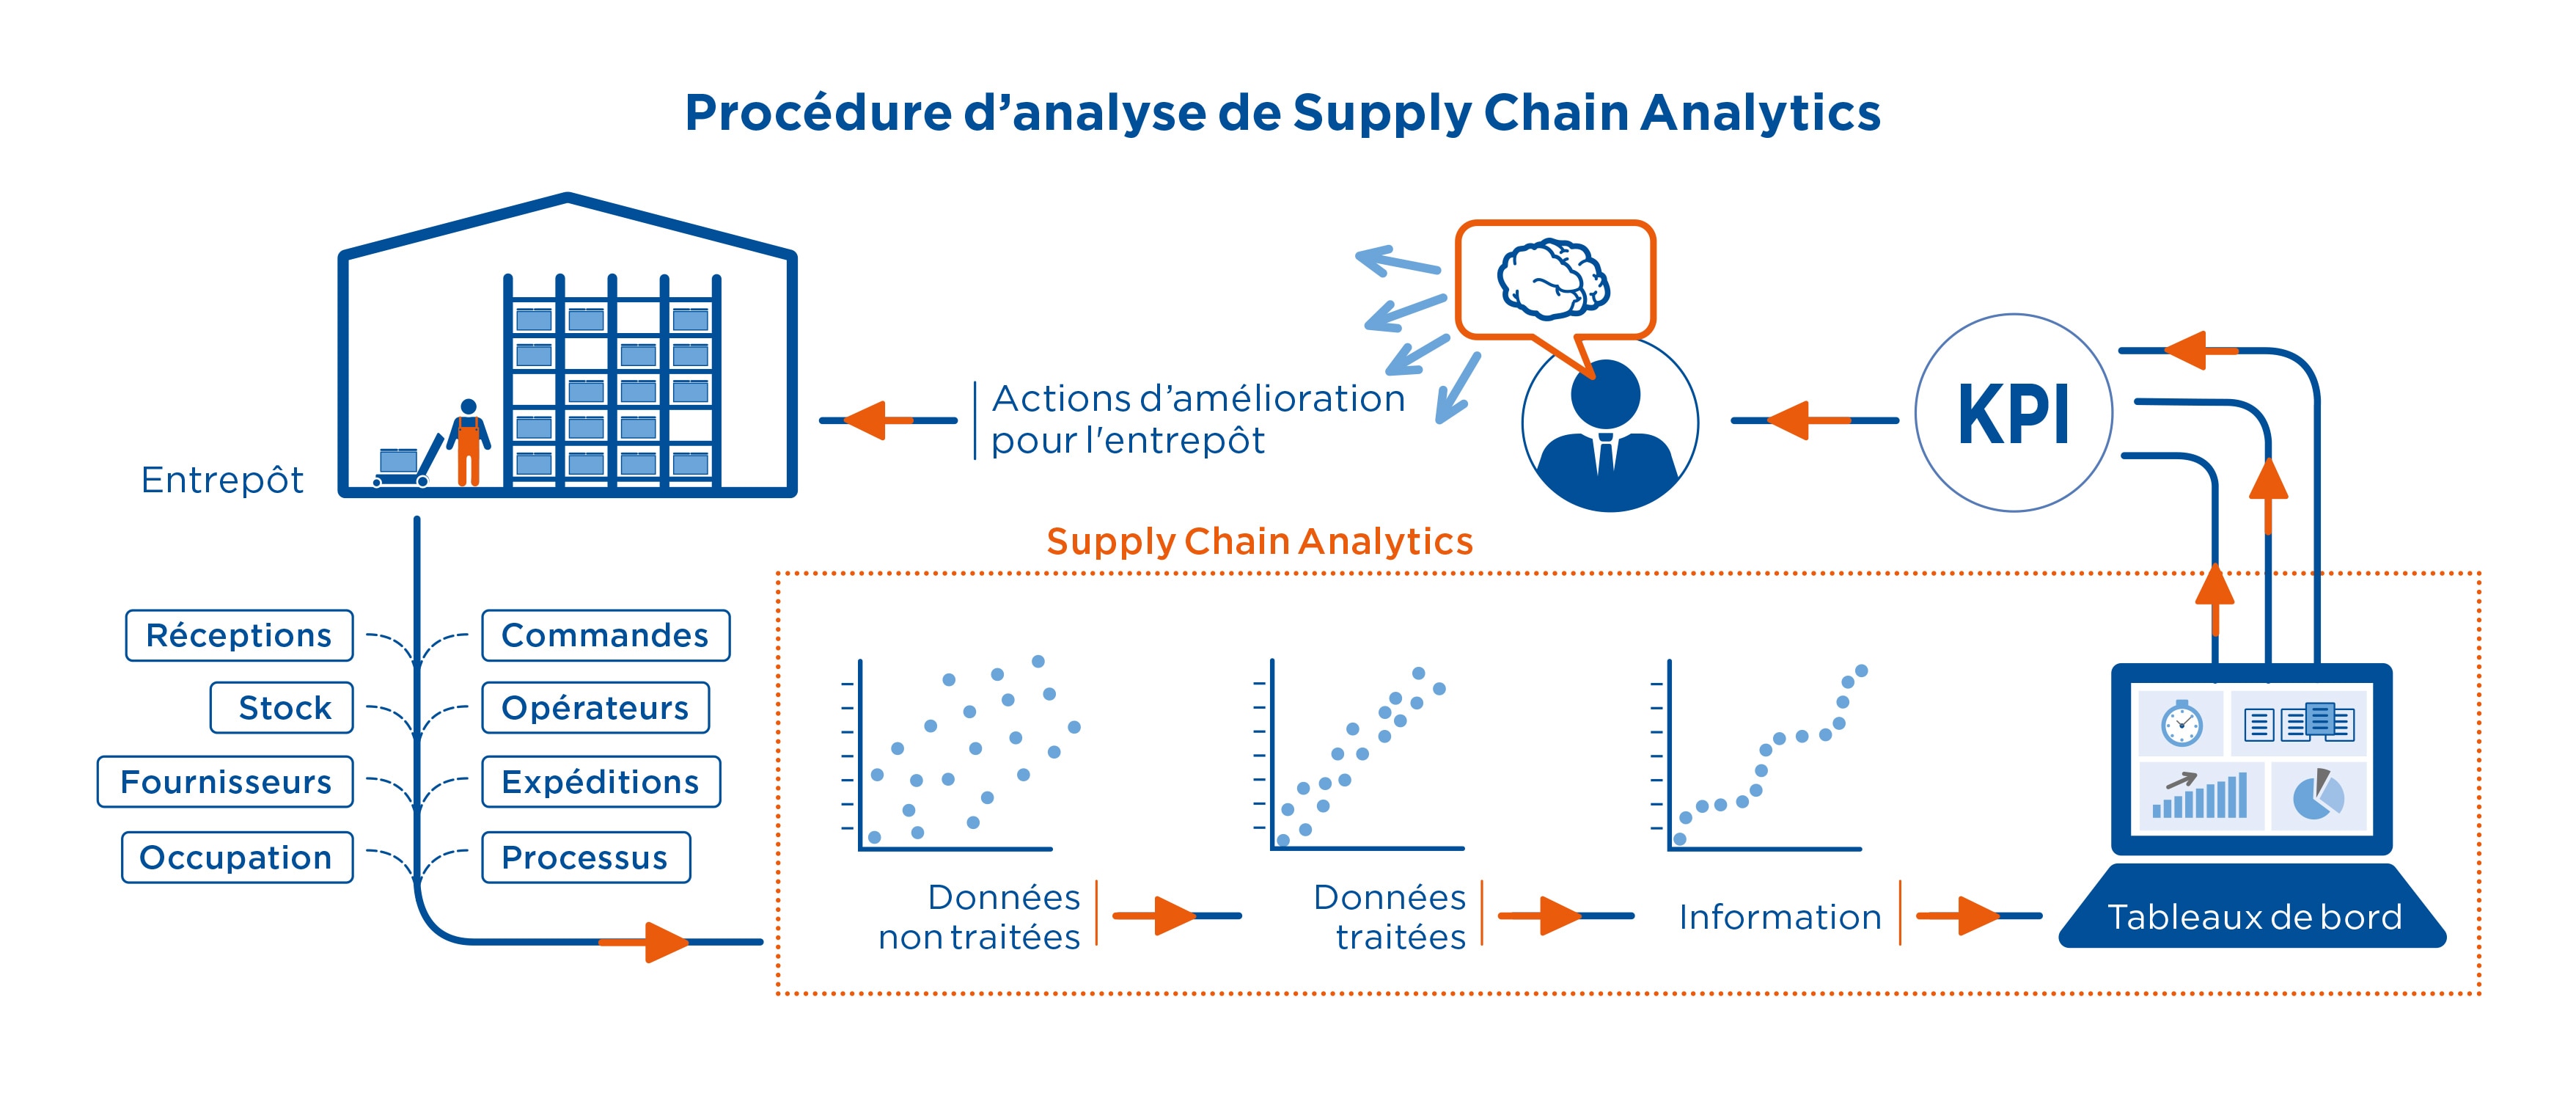 Proccédure d'analyse de Supply Chain Analytics 